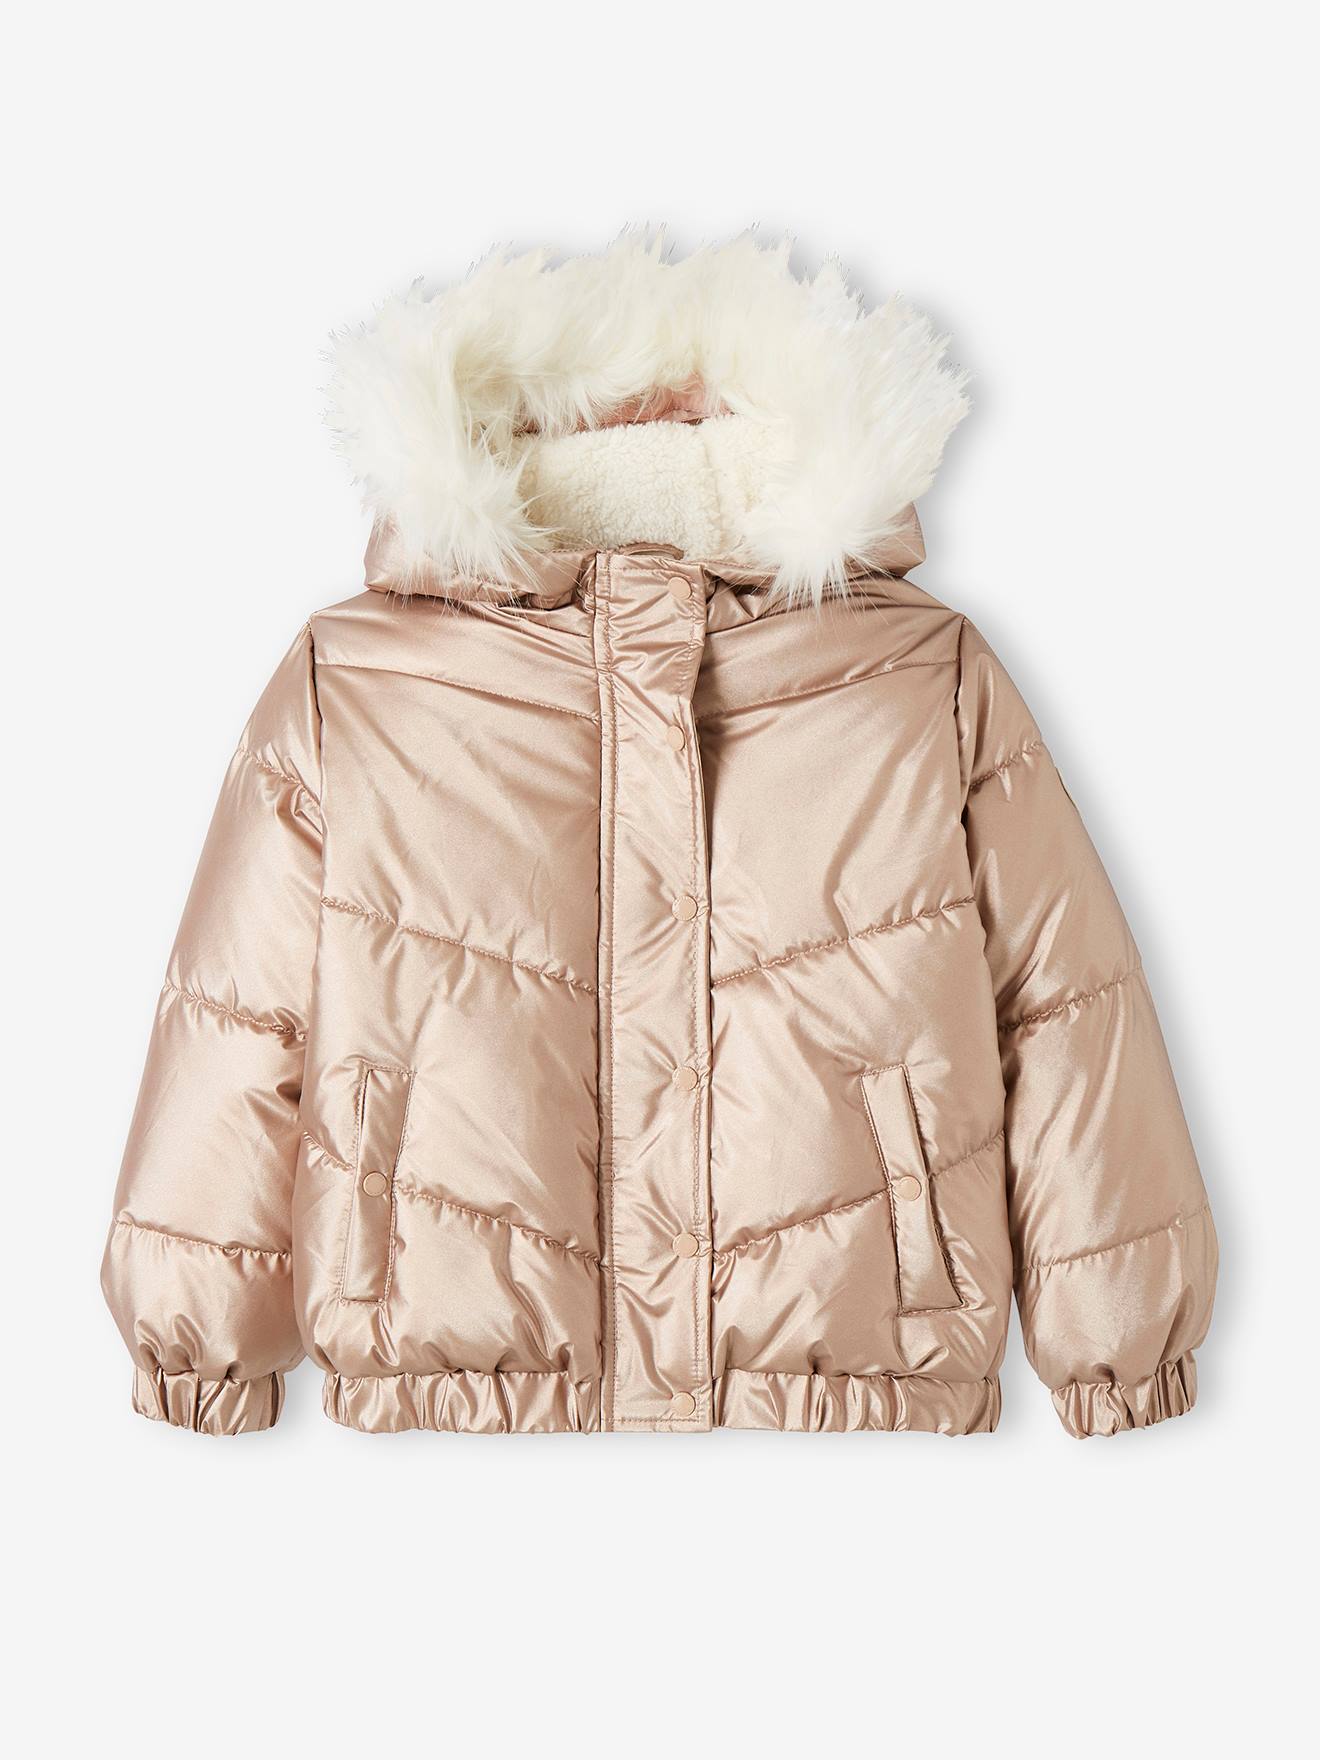 Age 3 5 7 8 9 10 11 12 13 SS7 Girls Fleece Lined Padded Parka Coat Faux Fur Jacket 